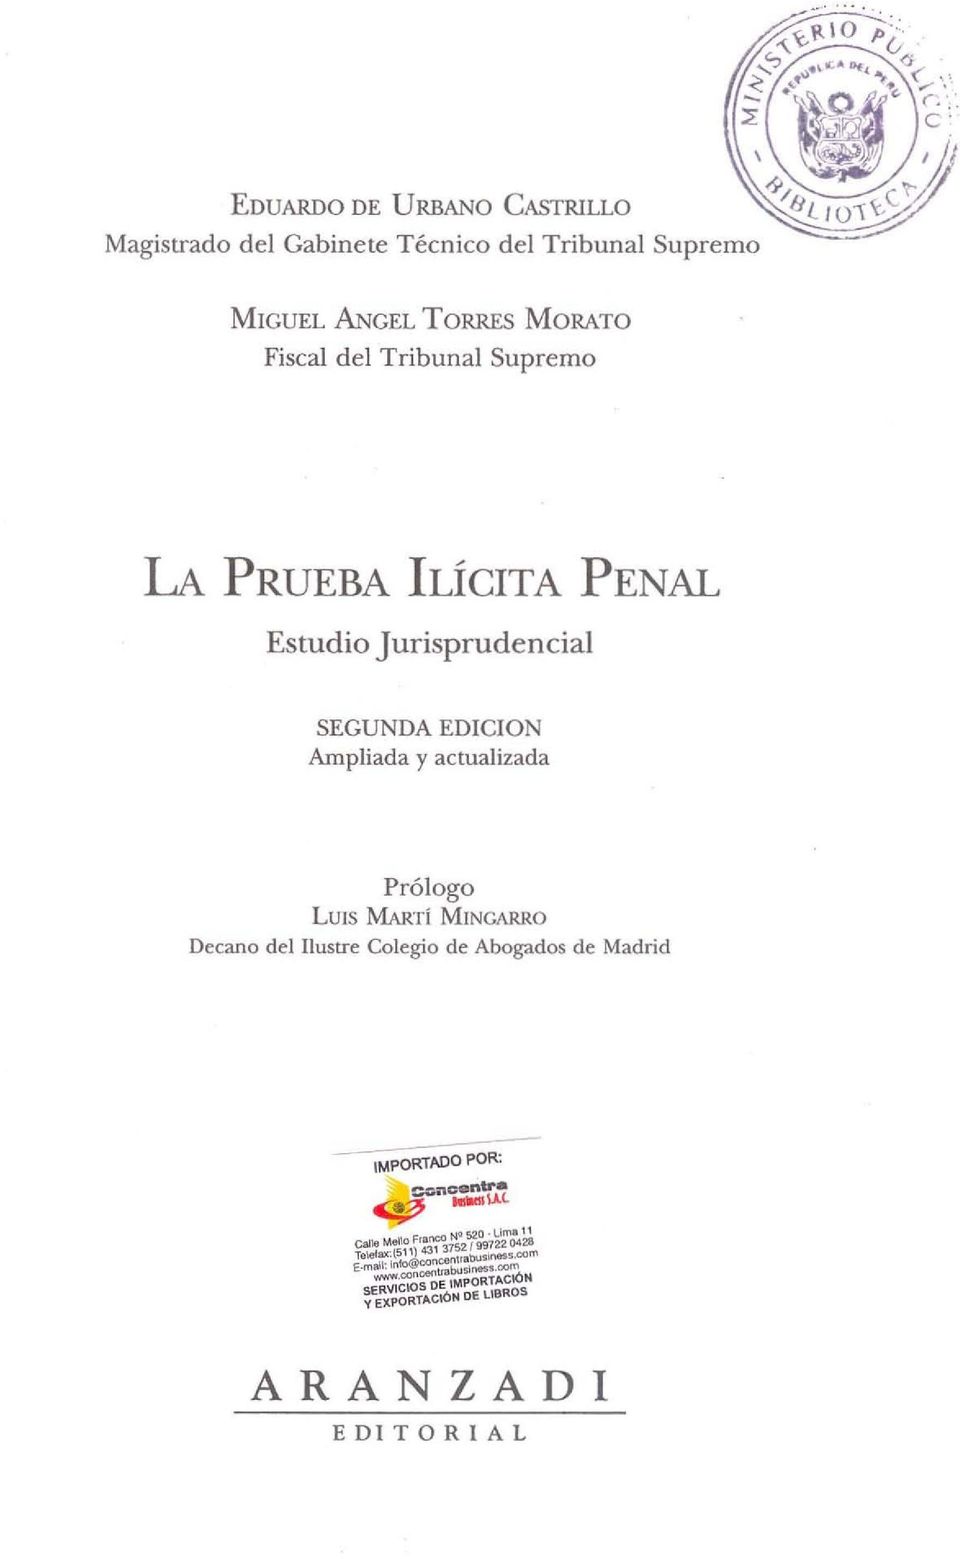 SEGUNDA EDICION Ampliada y actualizada Prólogo LUIS MARTí MINGARRO